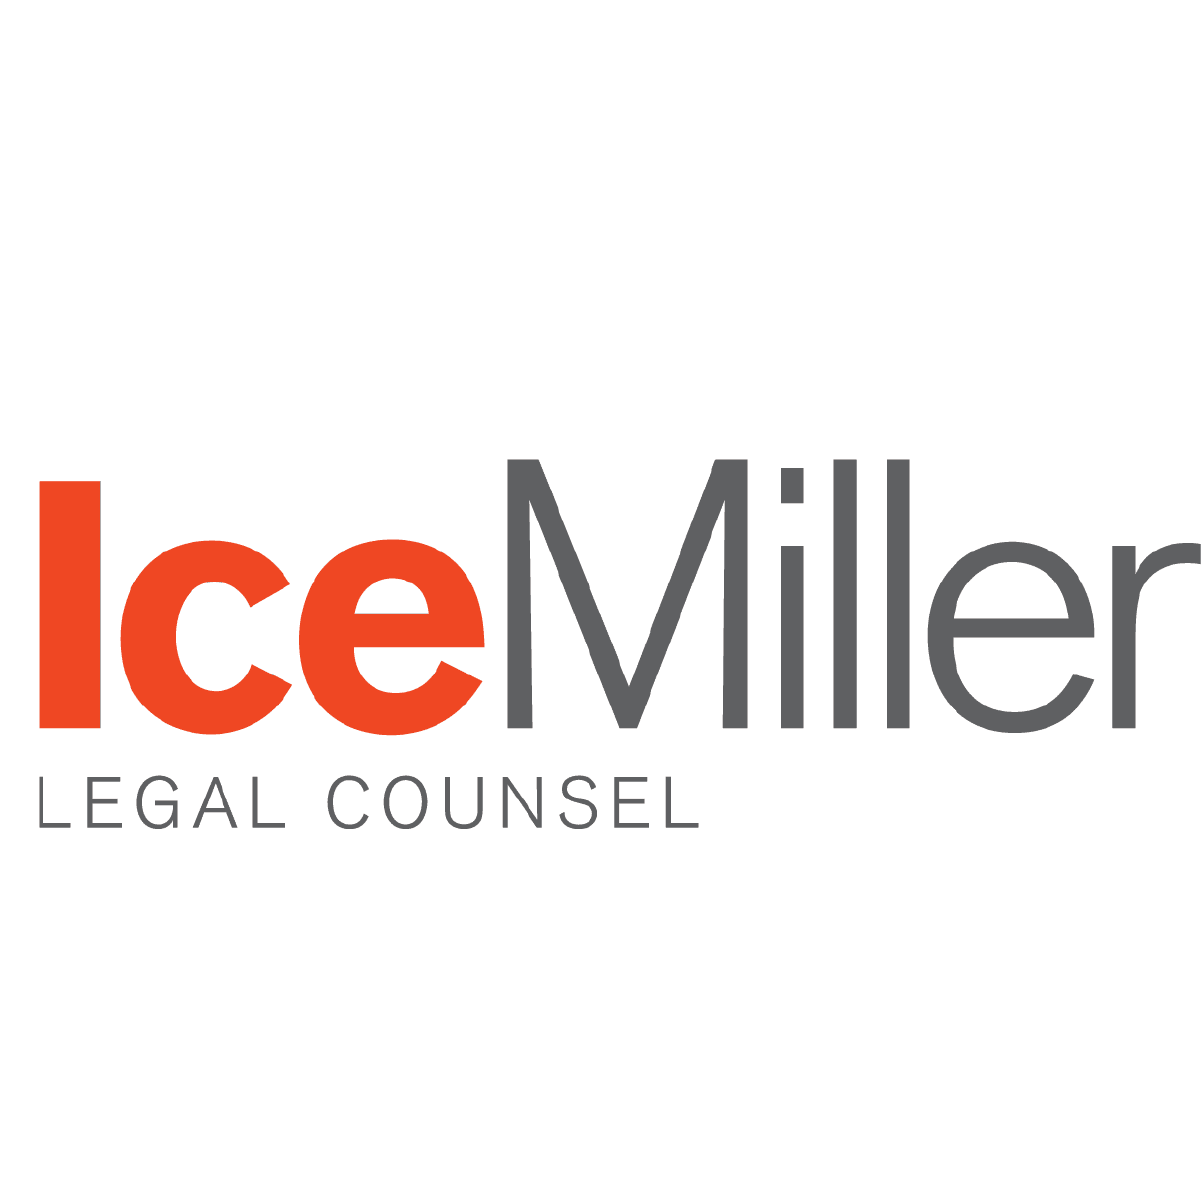 IceMiller logo